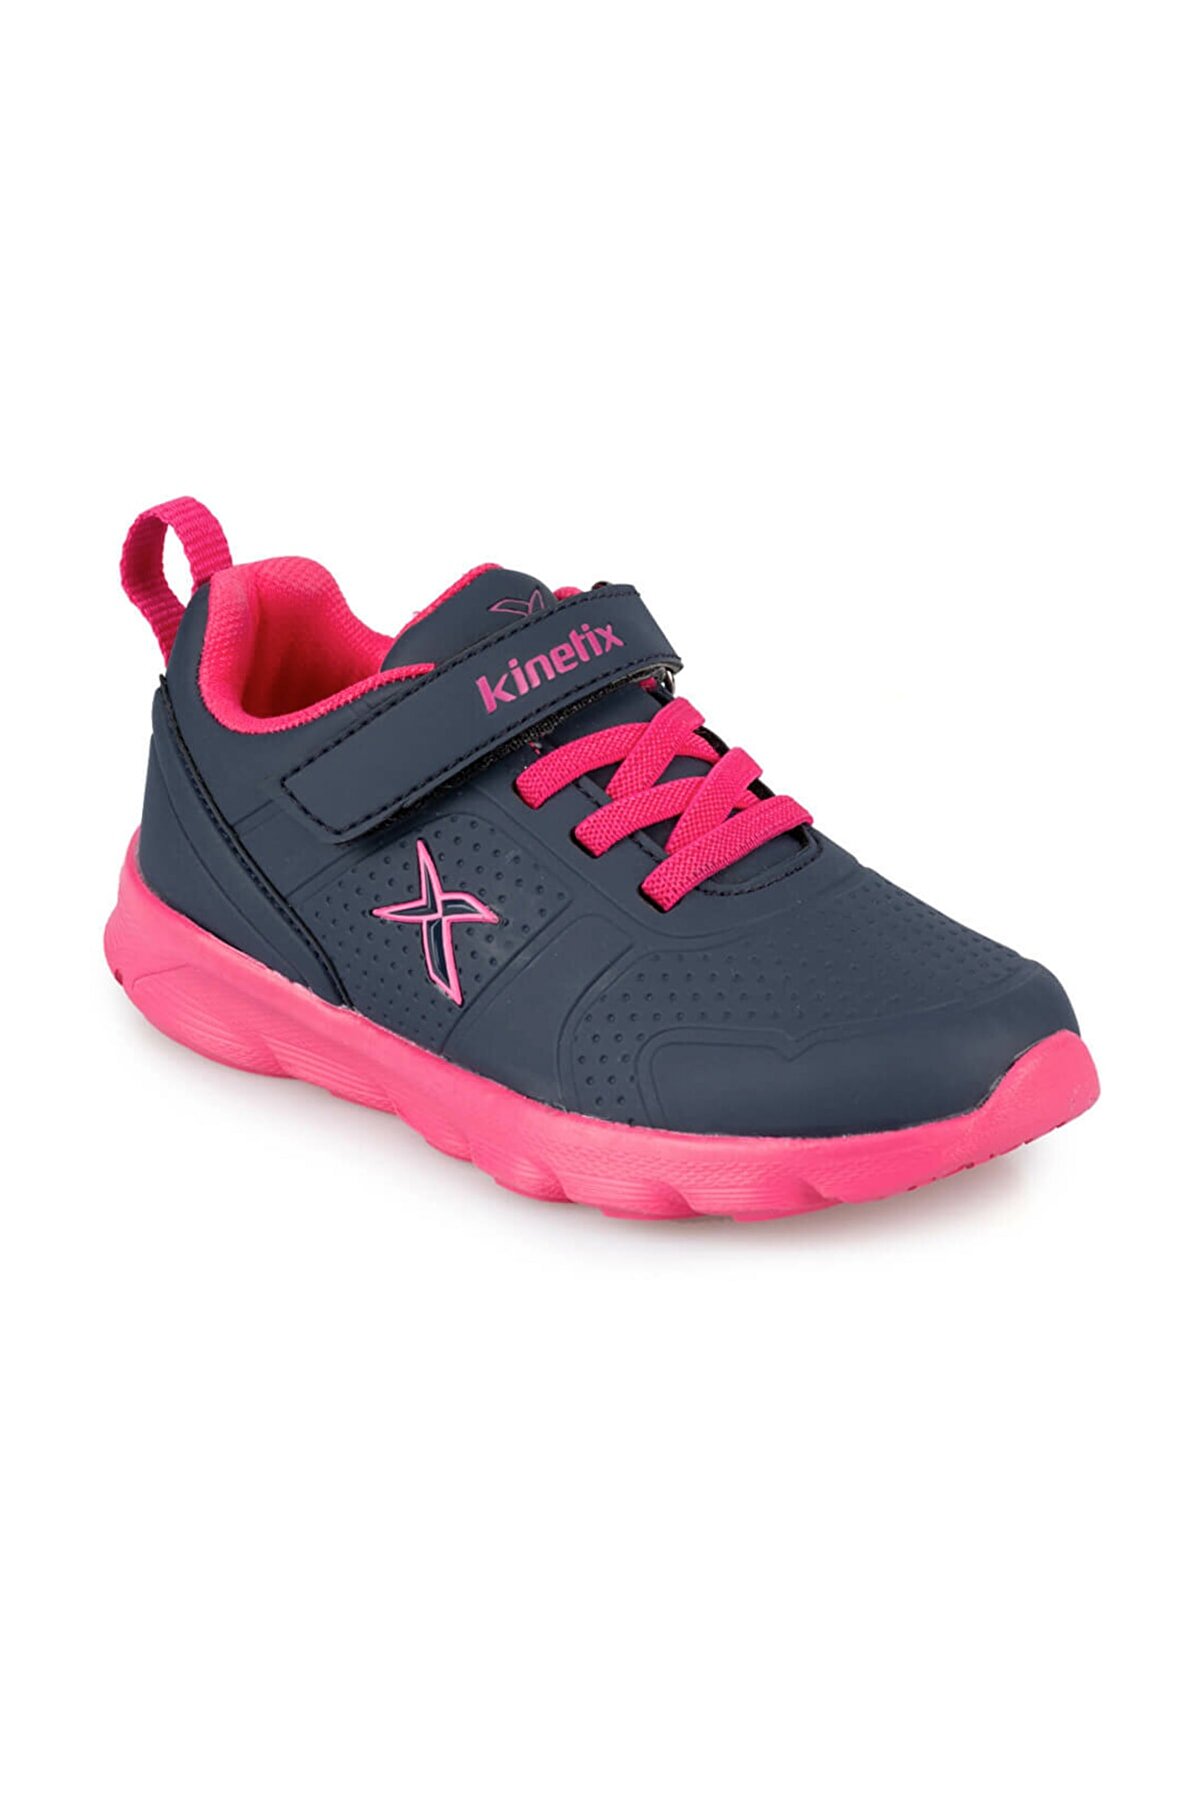 Kinetix ALMERA II J 9PR Lacivert Kız Çocuk Koşu Ayakkabısı 100425180